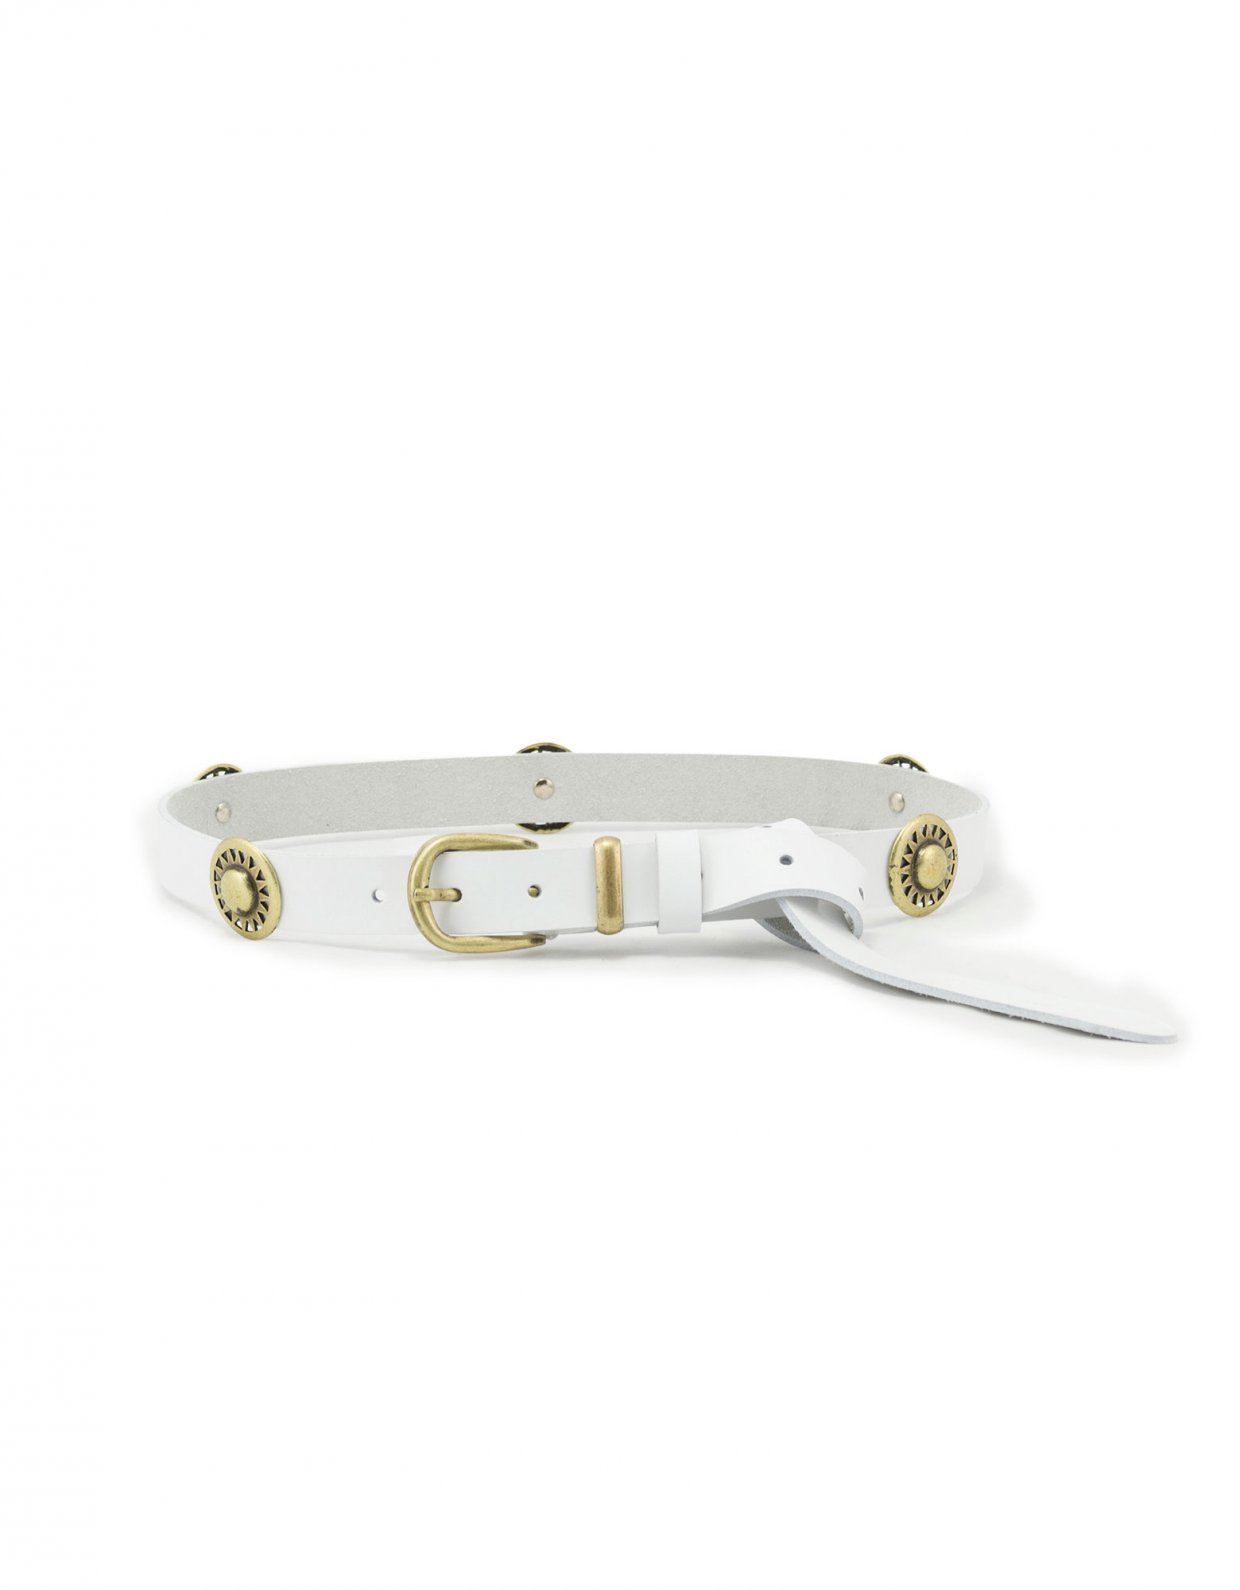 Individual Art Leather Holiday belt white